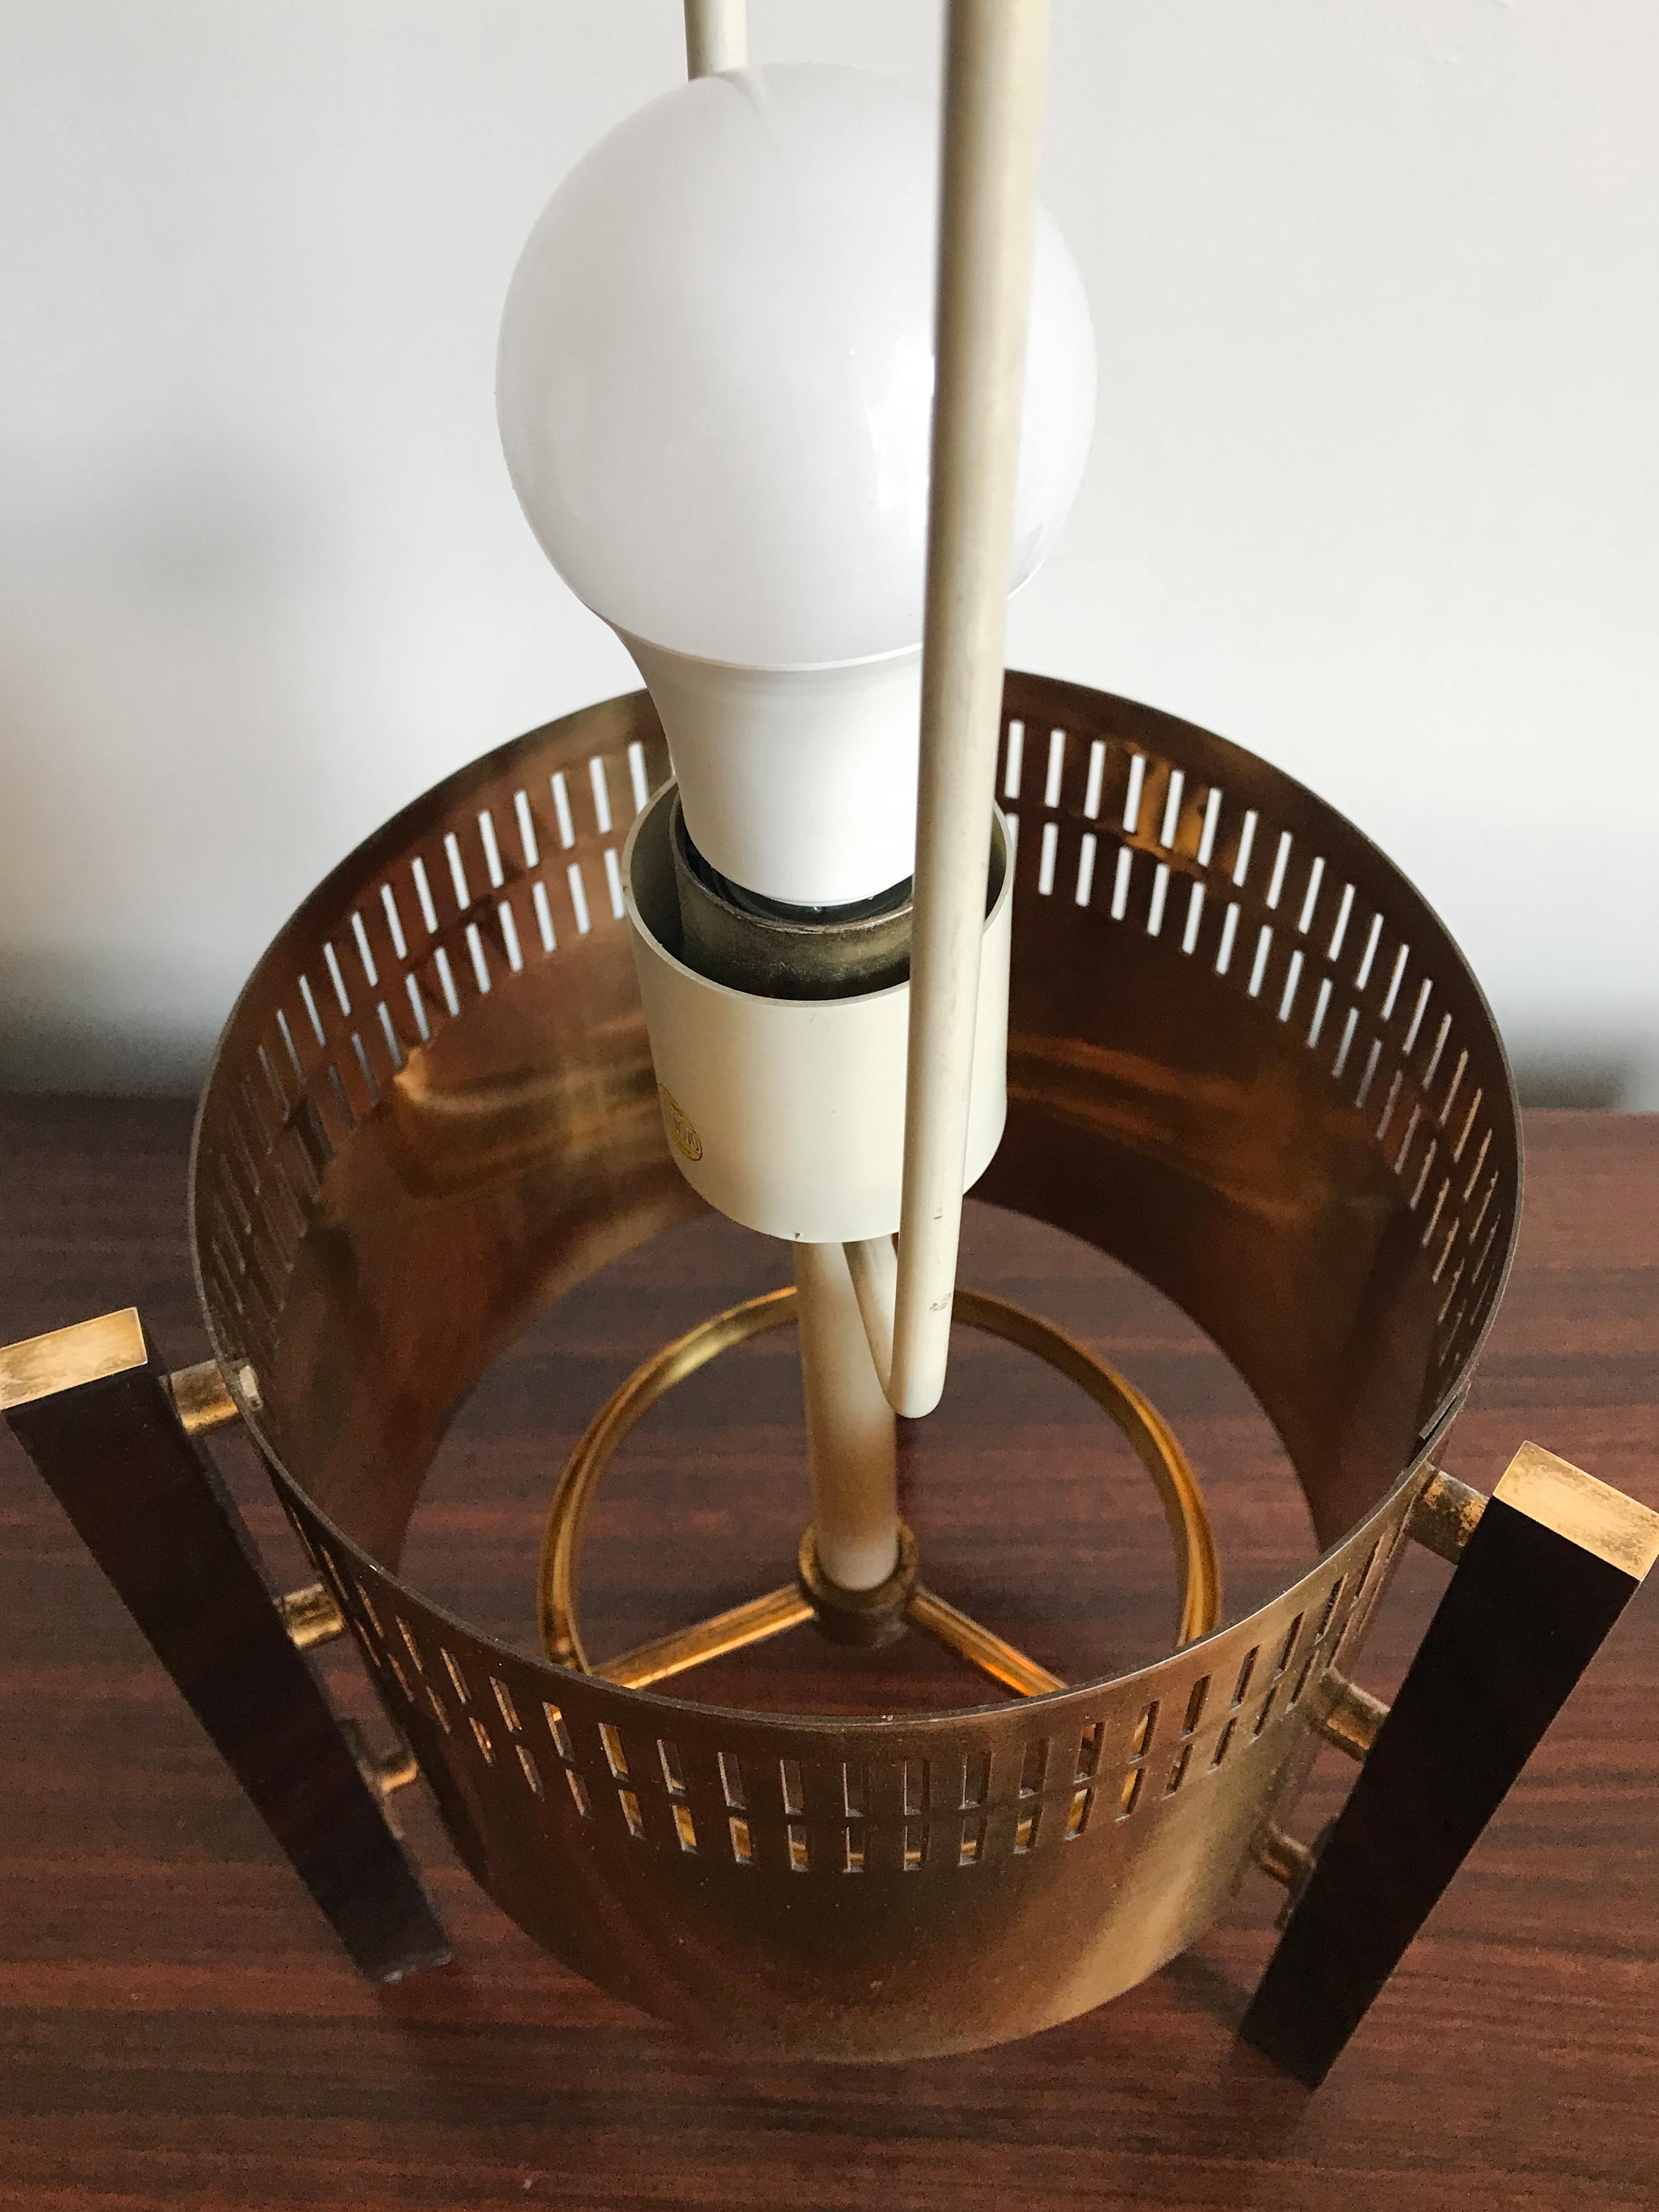 Stilnovo Midcentury Italian Brass Glass Table Lamp, Floor Lamp 1950s For Sale 2